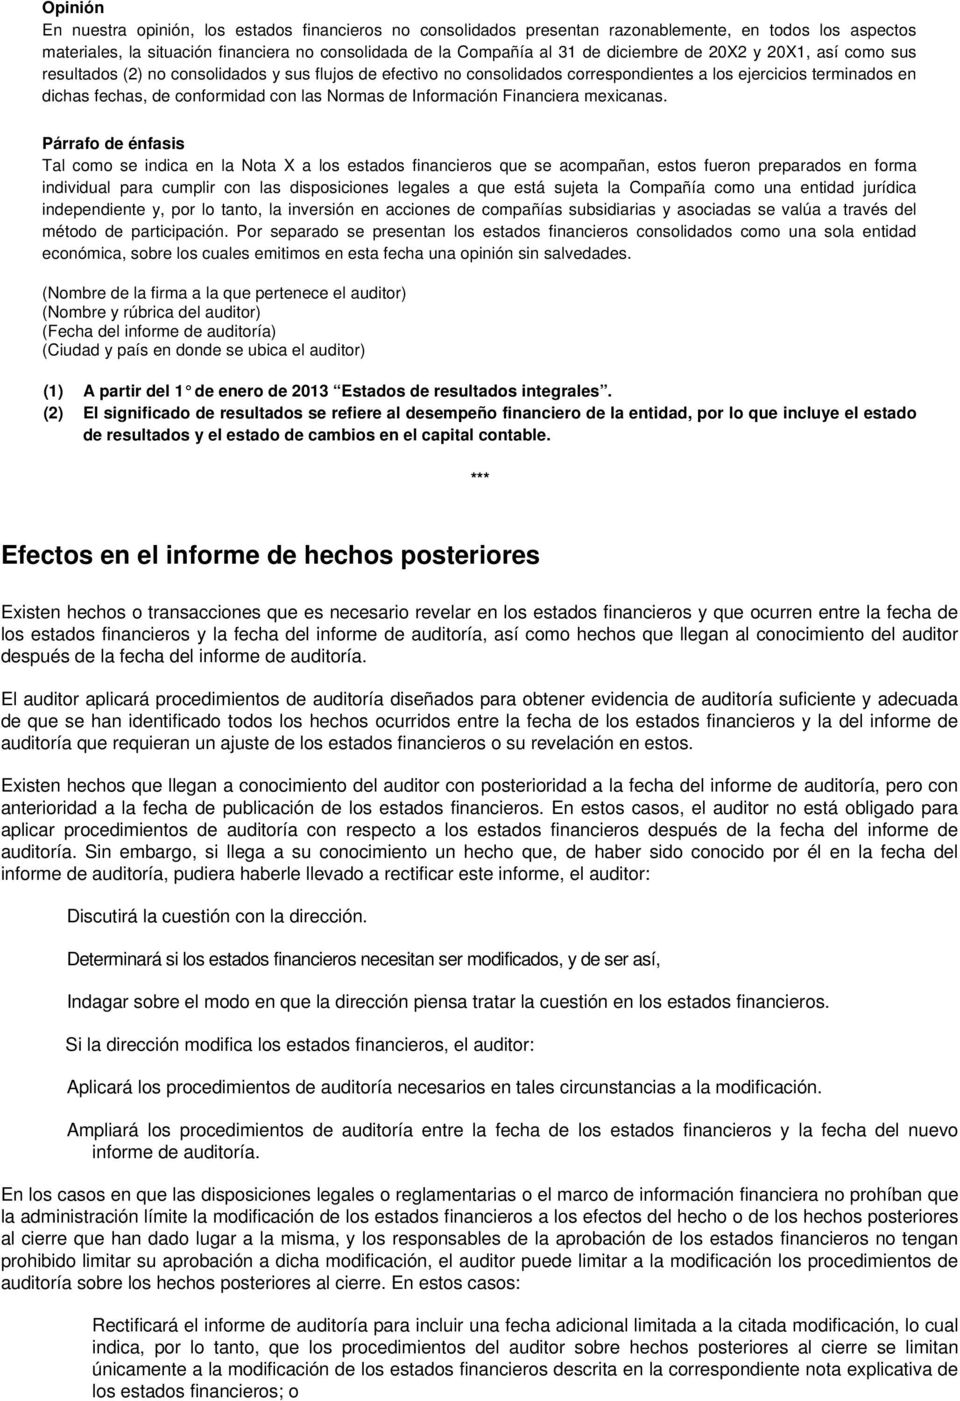 Normas de Información Financiera mexicanas.